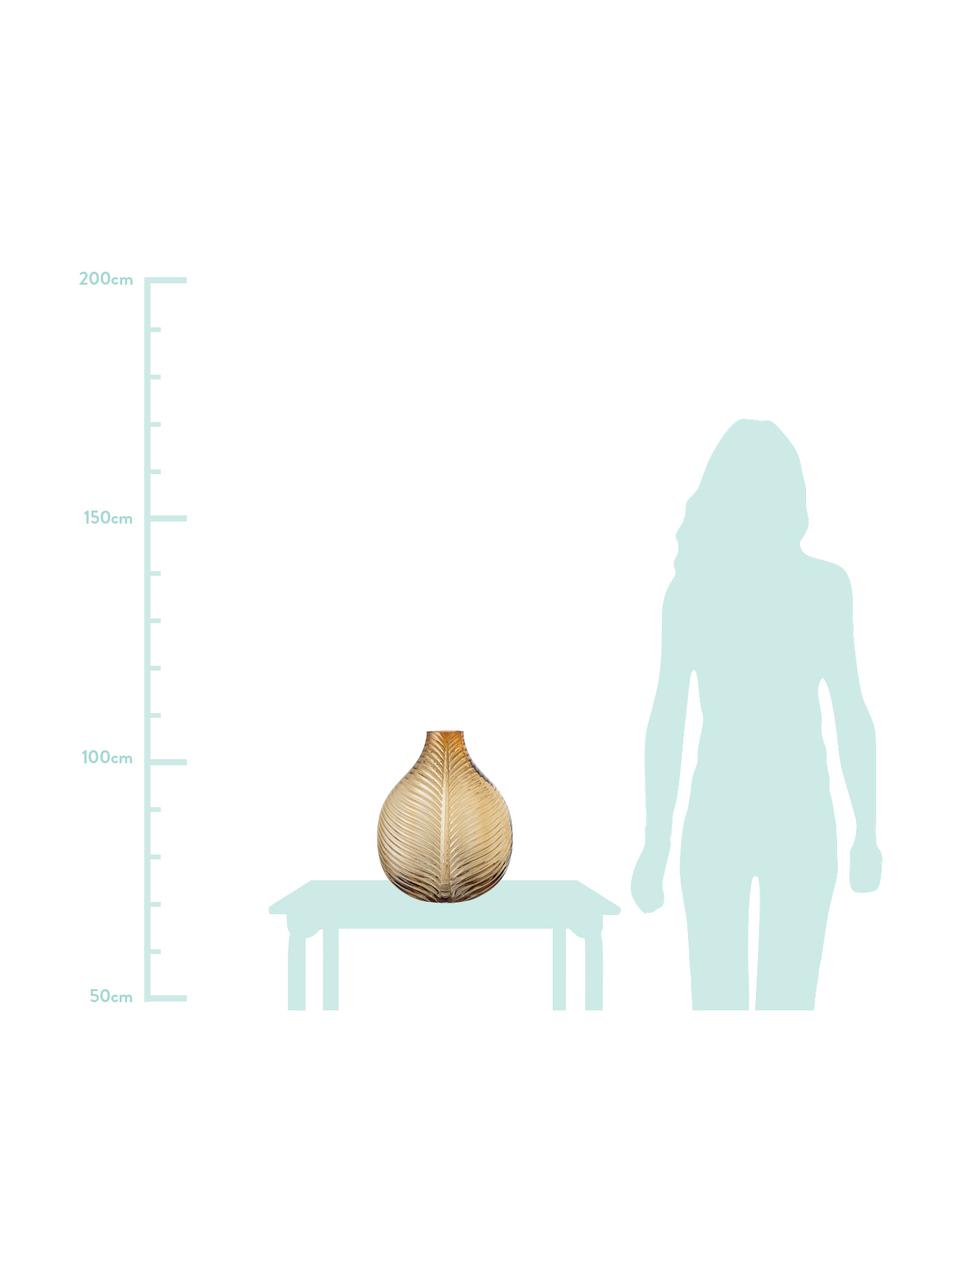 Grosse Deko-Vase Amber mit Blattstruktur, Glas, Braun, 28 x 36 cm